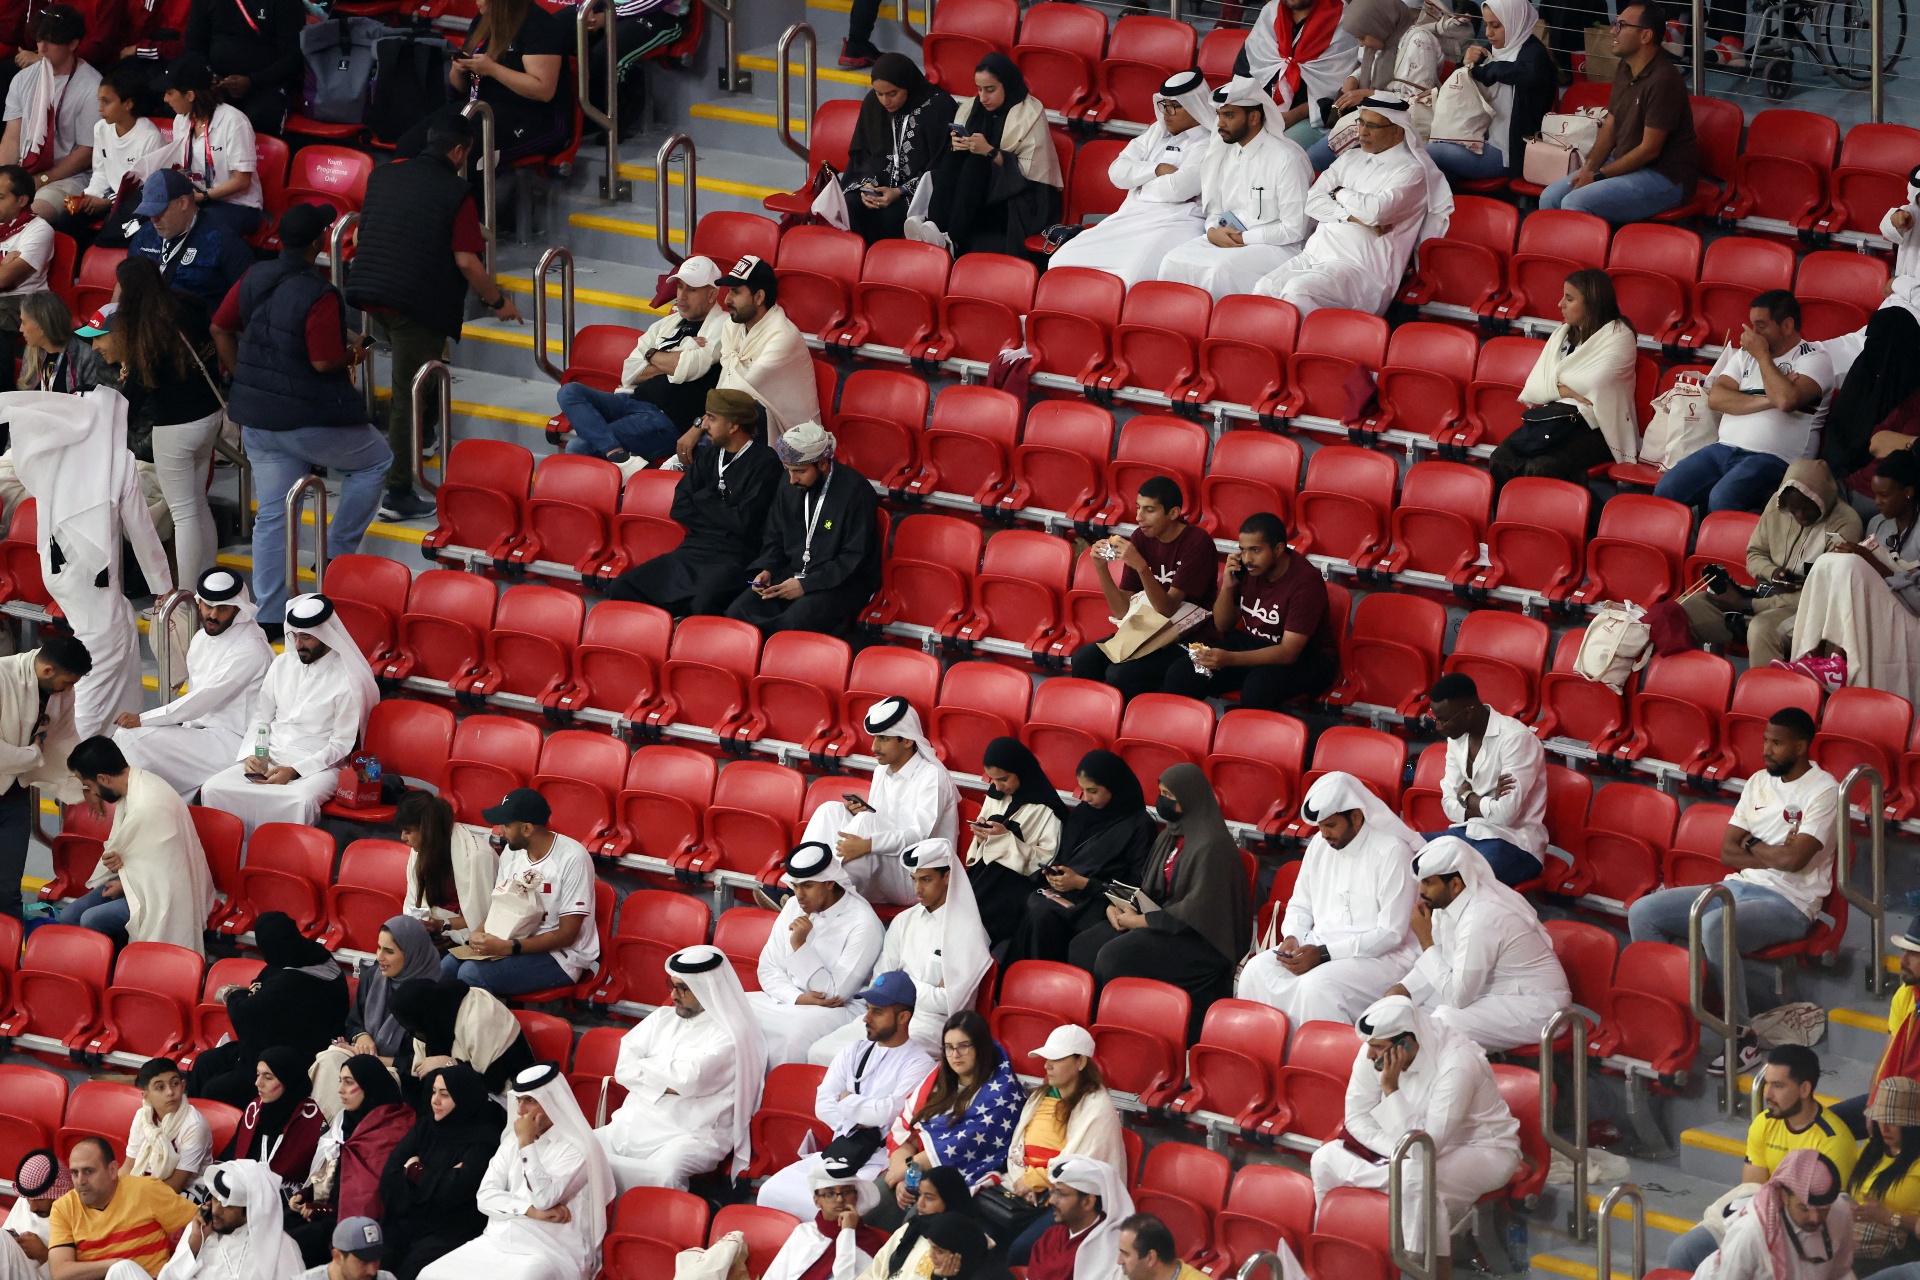 Câu chuyện buồn sau những dãy ghế trống trên khán đài ở Qatar - Ảnh 4.